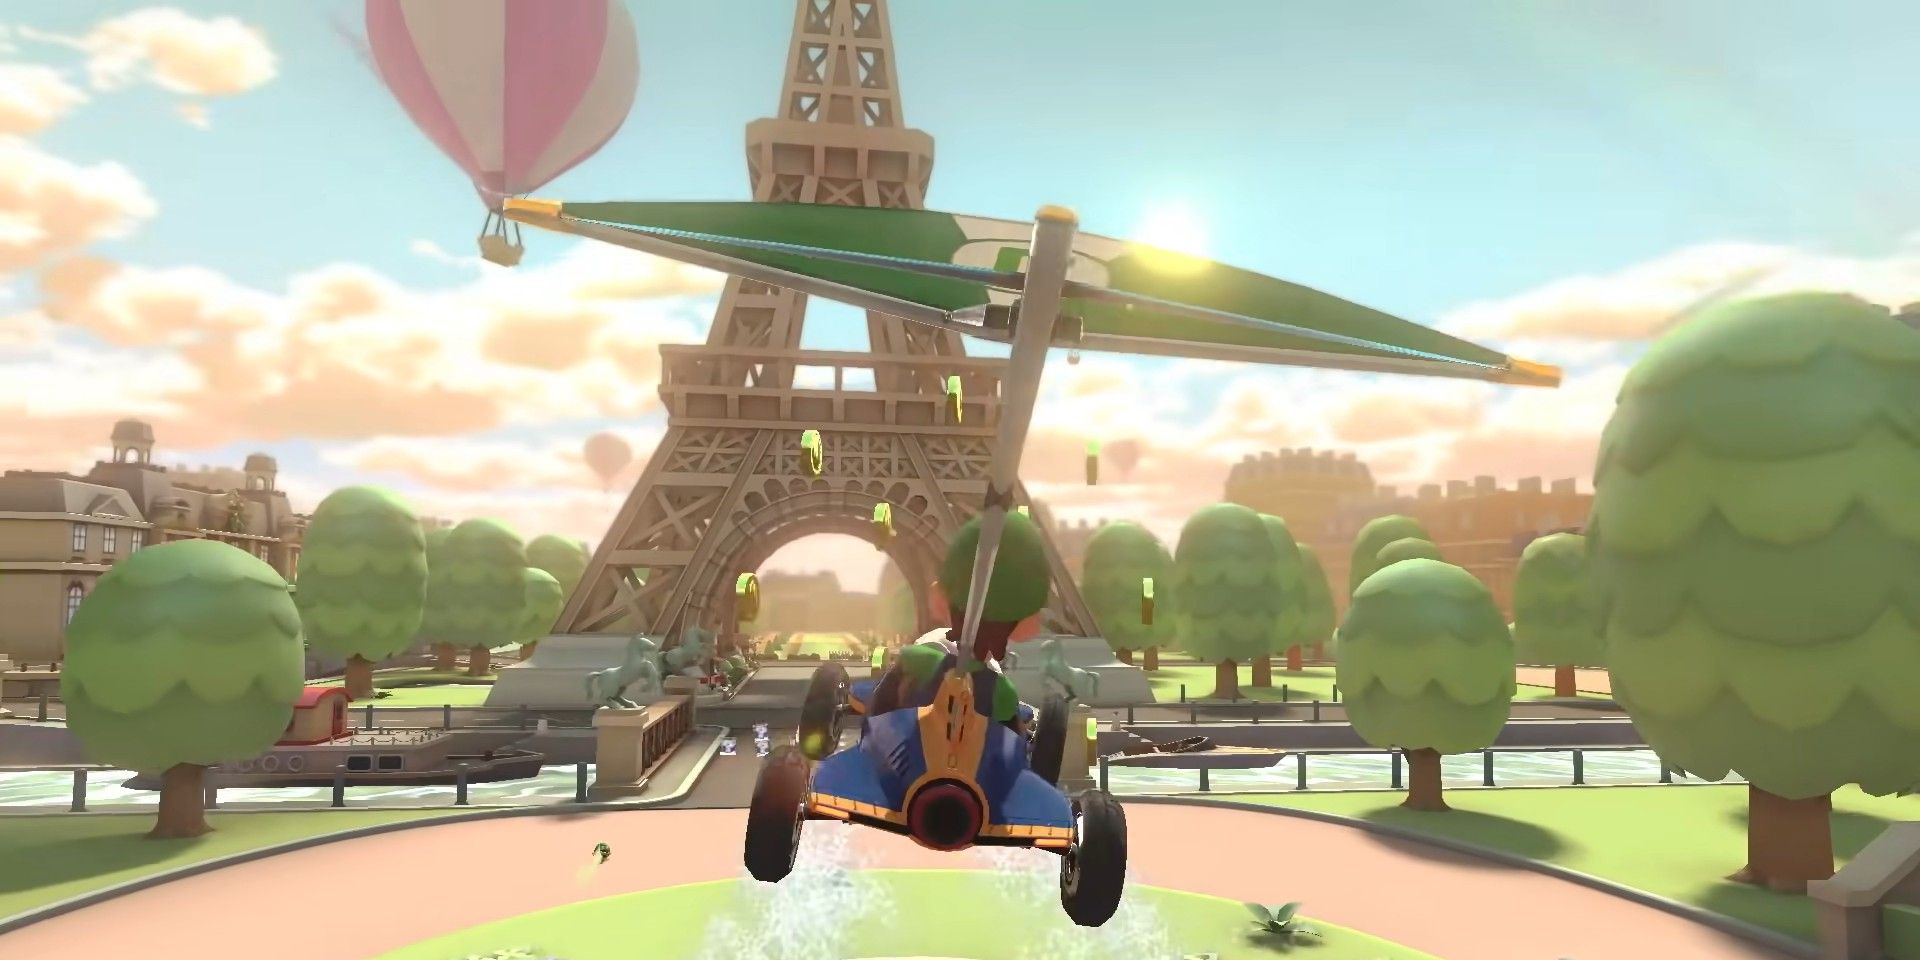 Luigi gliding on Tour Paris Promenade.